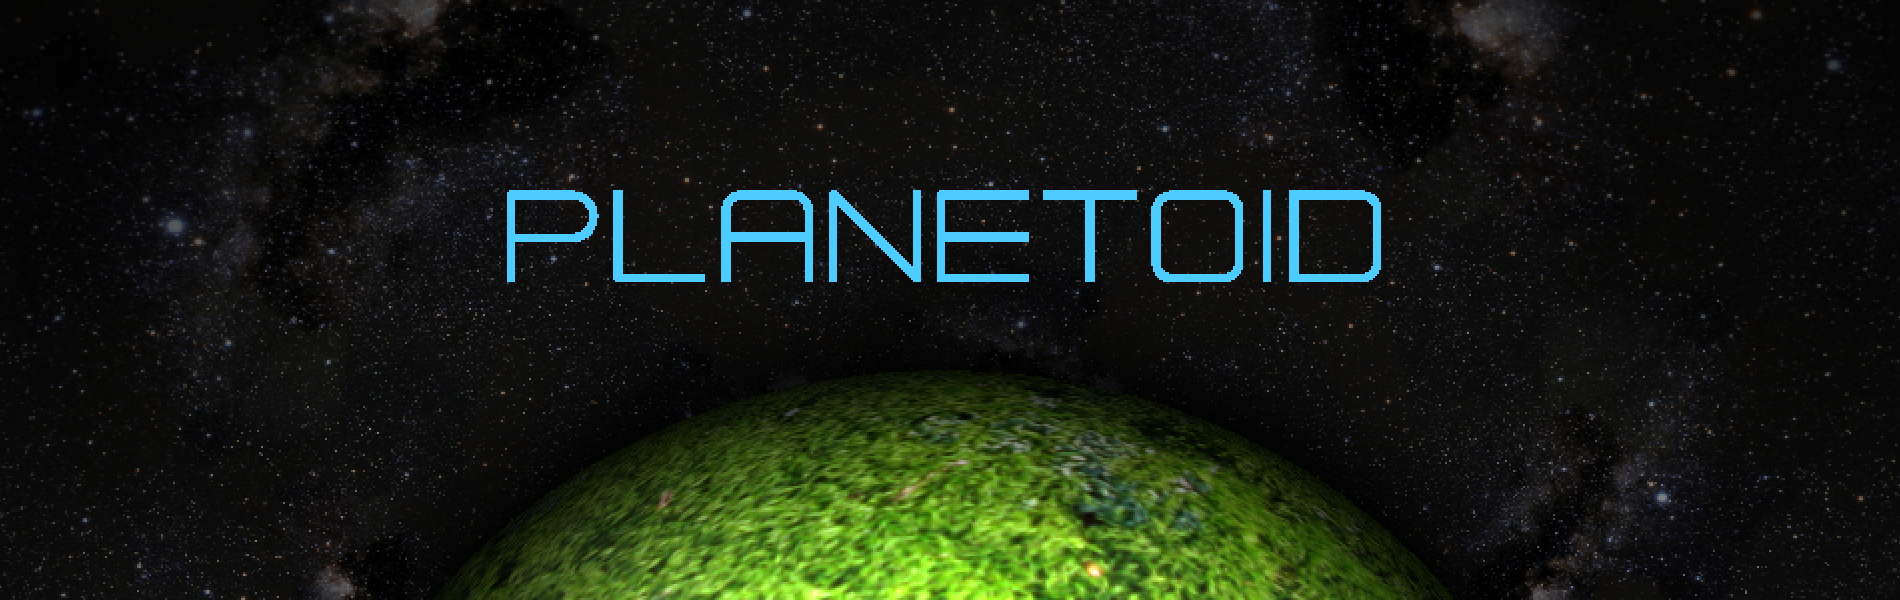 Work-In-Progress Planetoid Logo